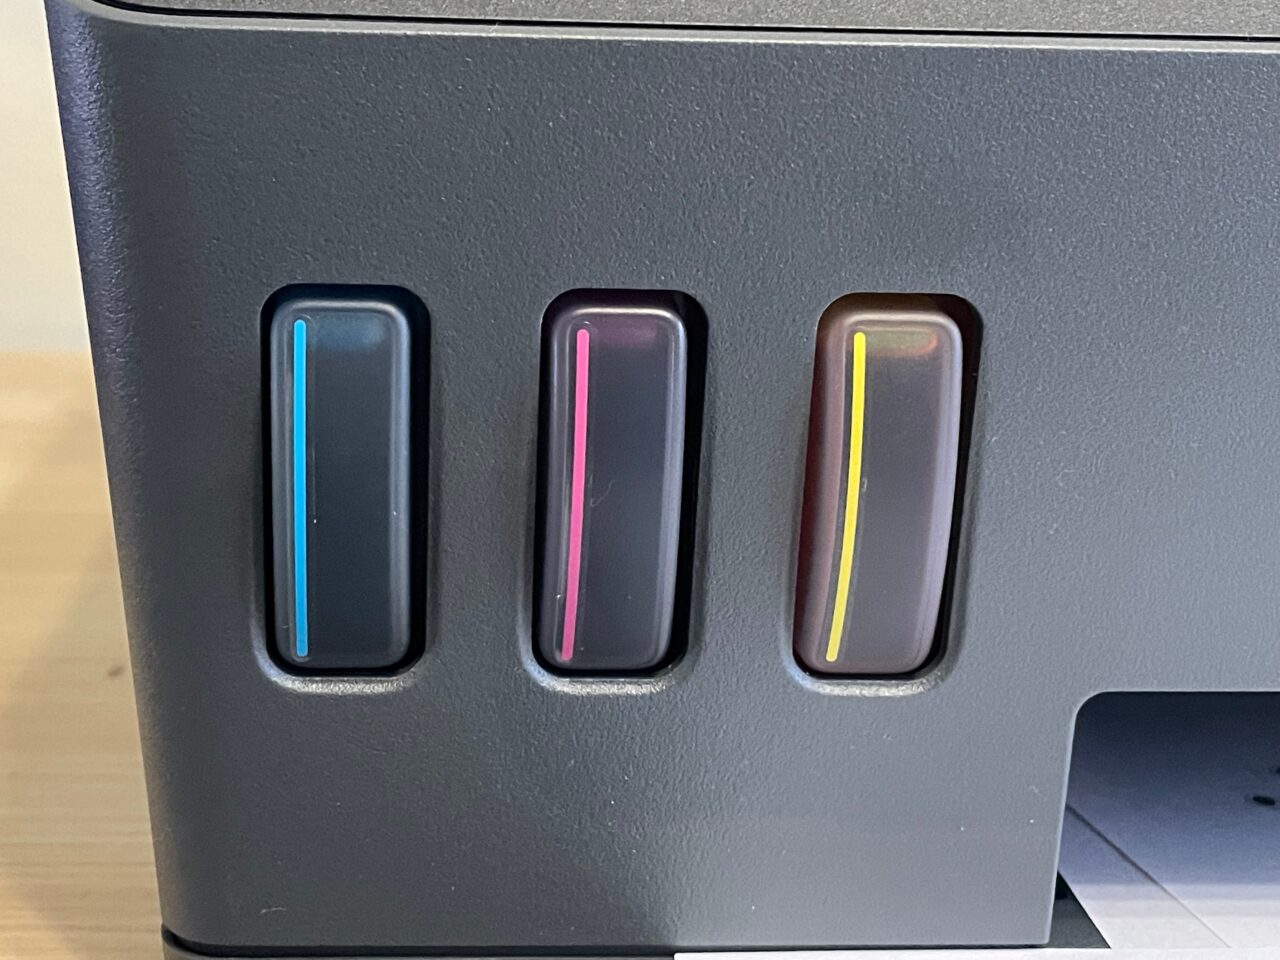 Część przednia komputera z trzema widocznymi poziomymi szczelinami na porty, z których każda ma kolorowy pasek: niebieski, różowy i żółty, na czarnym tle obudowy.